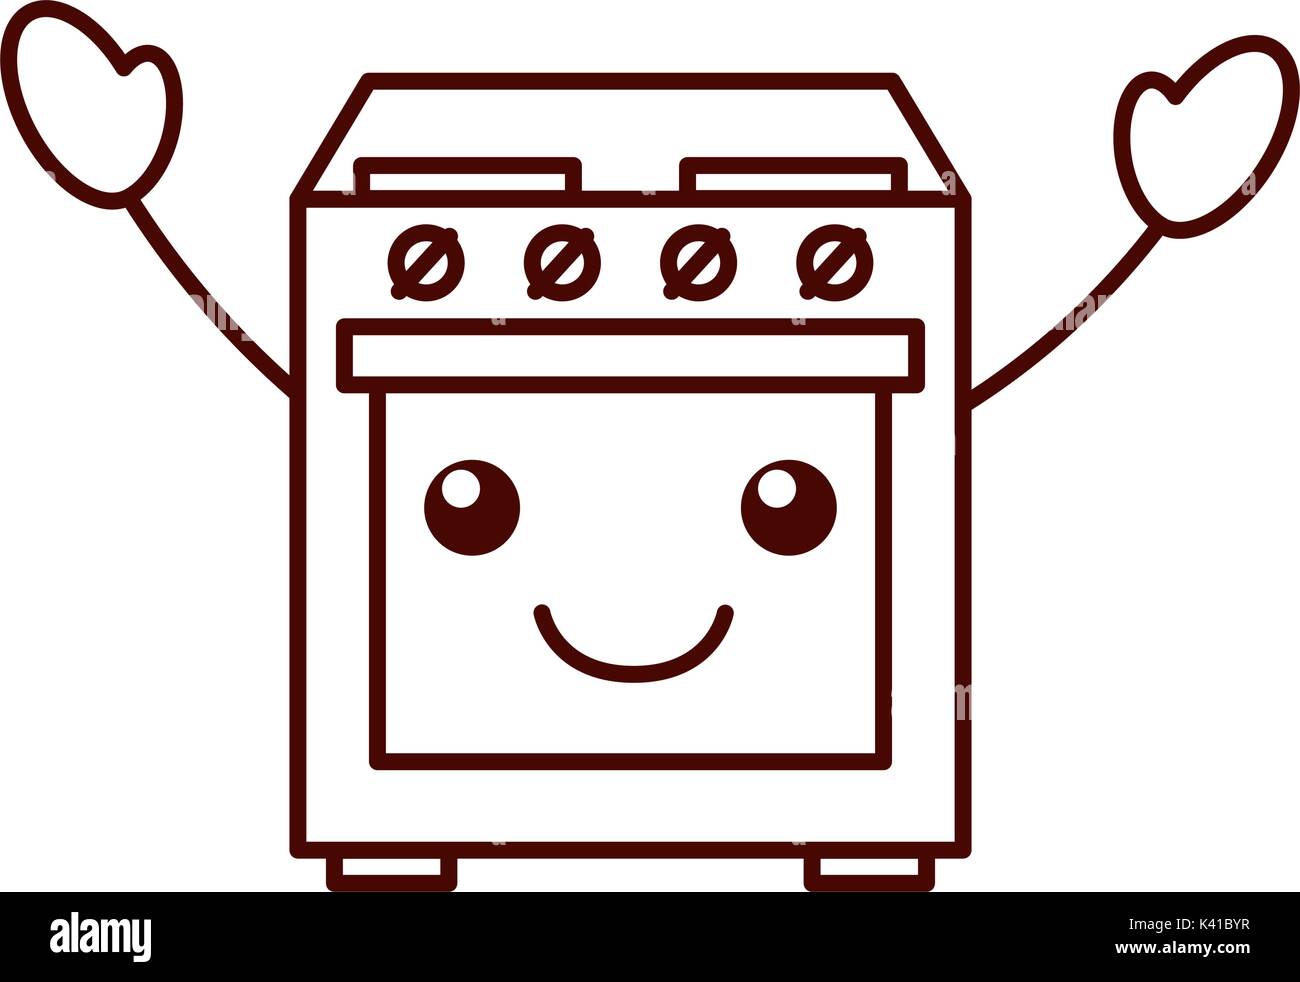 Microwave kitchen appliance cute kawaii cartoon